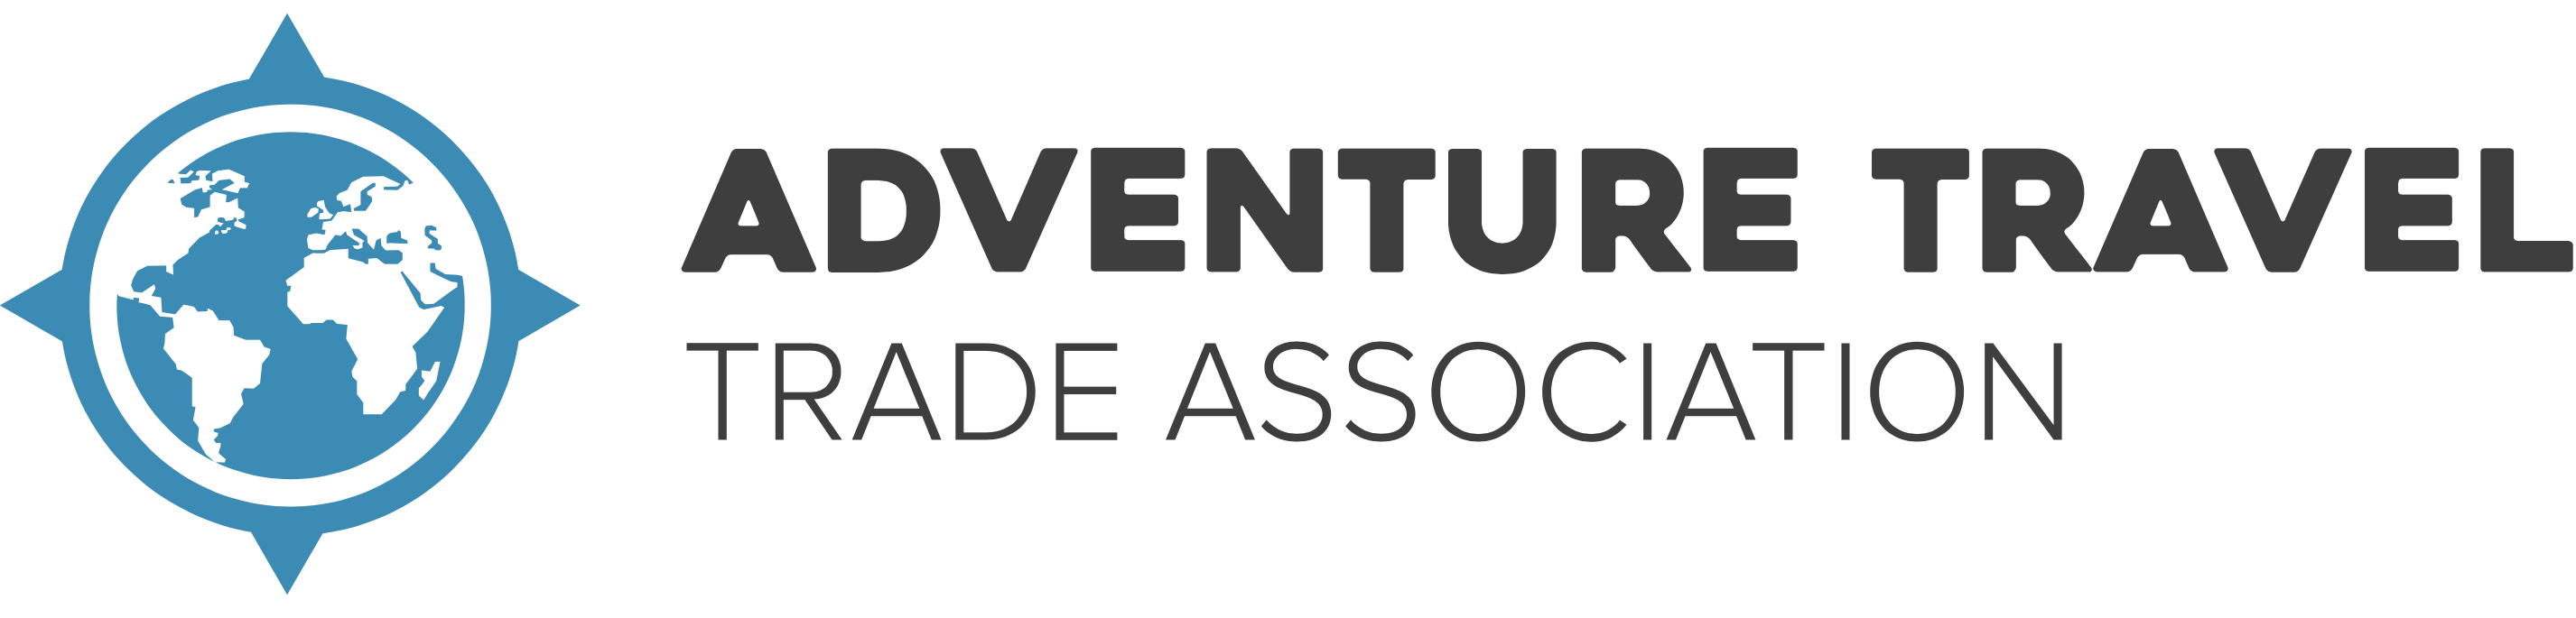 ATTA – Adventure Travel Trade Association